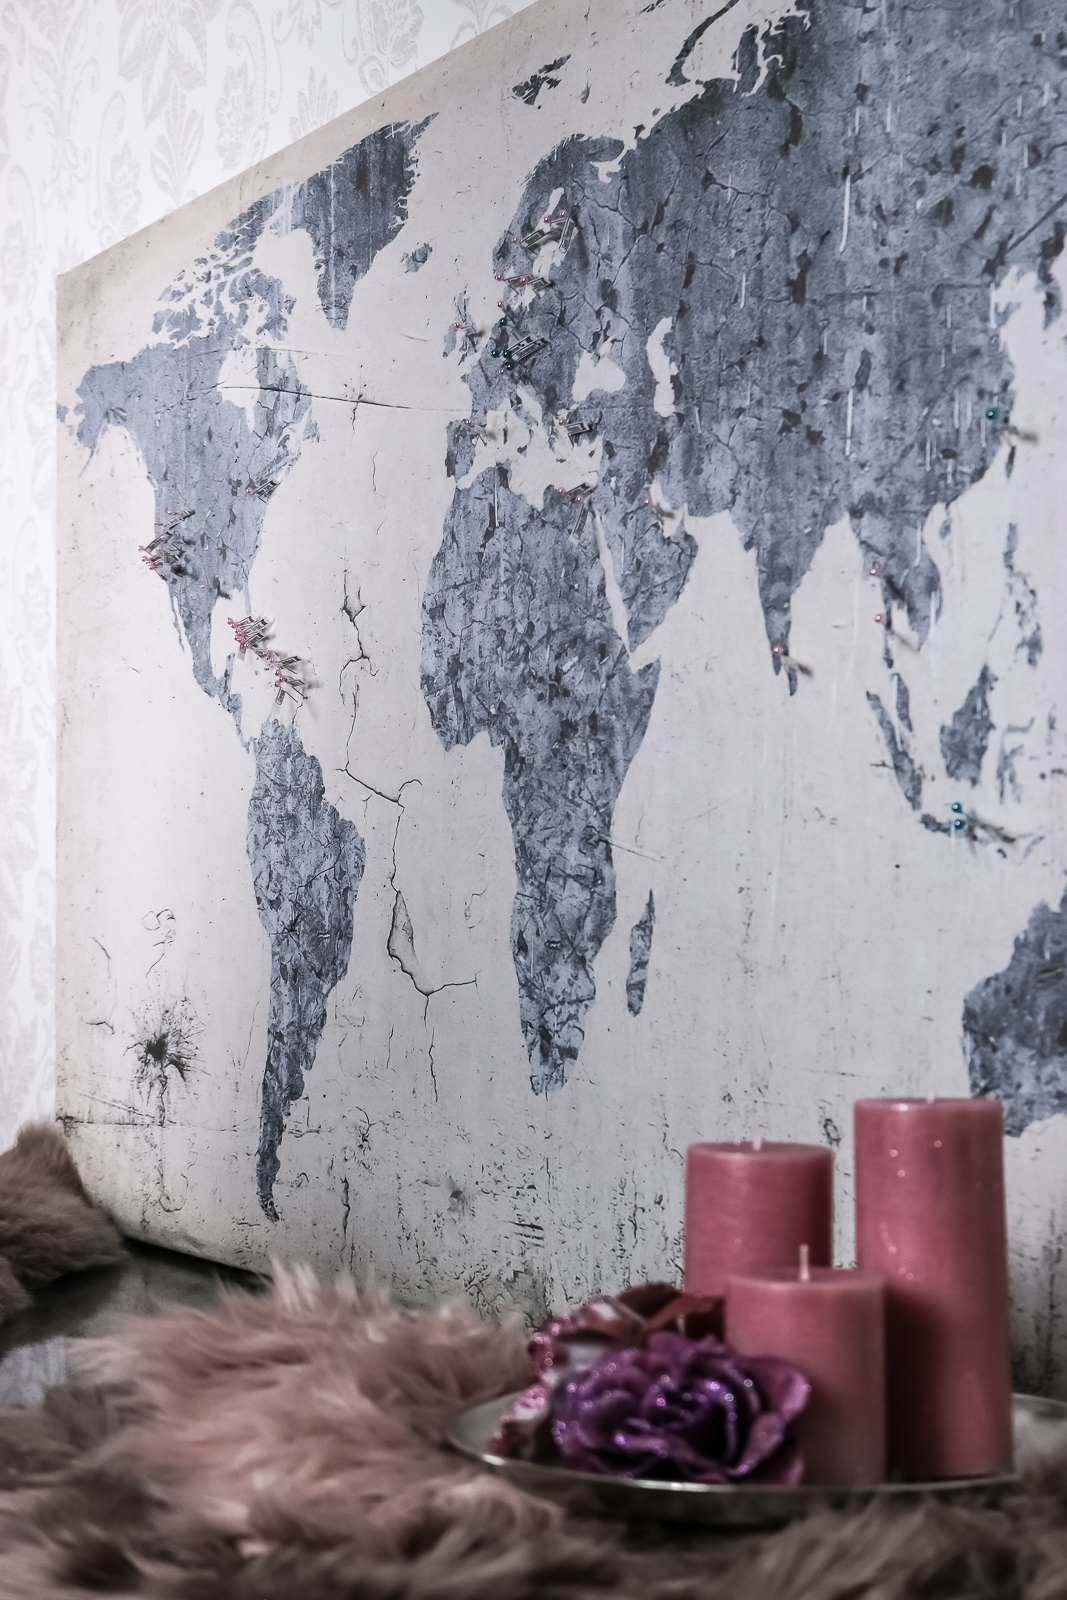 DIY: Reisekarte - Weltkarte zum aufhängen und kennzeichnen - DIY Reisekarte - Reisekarte zum kennzeichnen von Ländern - Reisekarte Bild auf Kork - Weltkarte zum kennzeichnen mit Nadeln selber machen - Reisekarte selber machen - Fashionladyloves by Tamara Wagner-Lifestyleblog